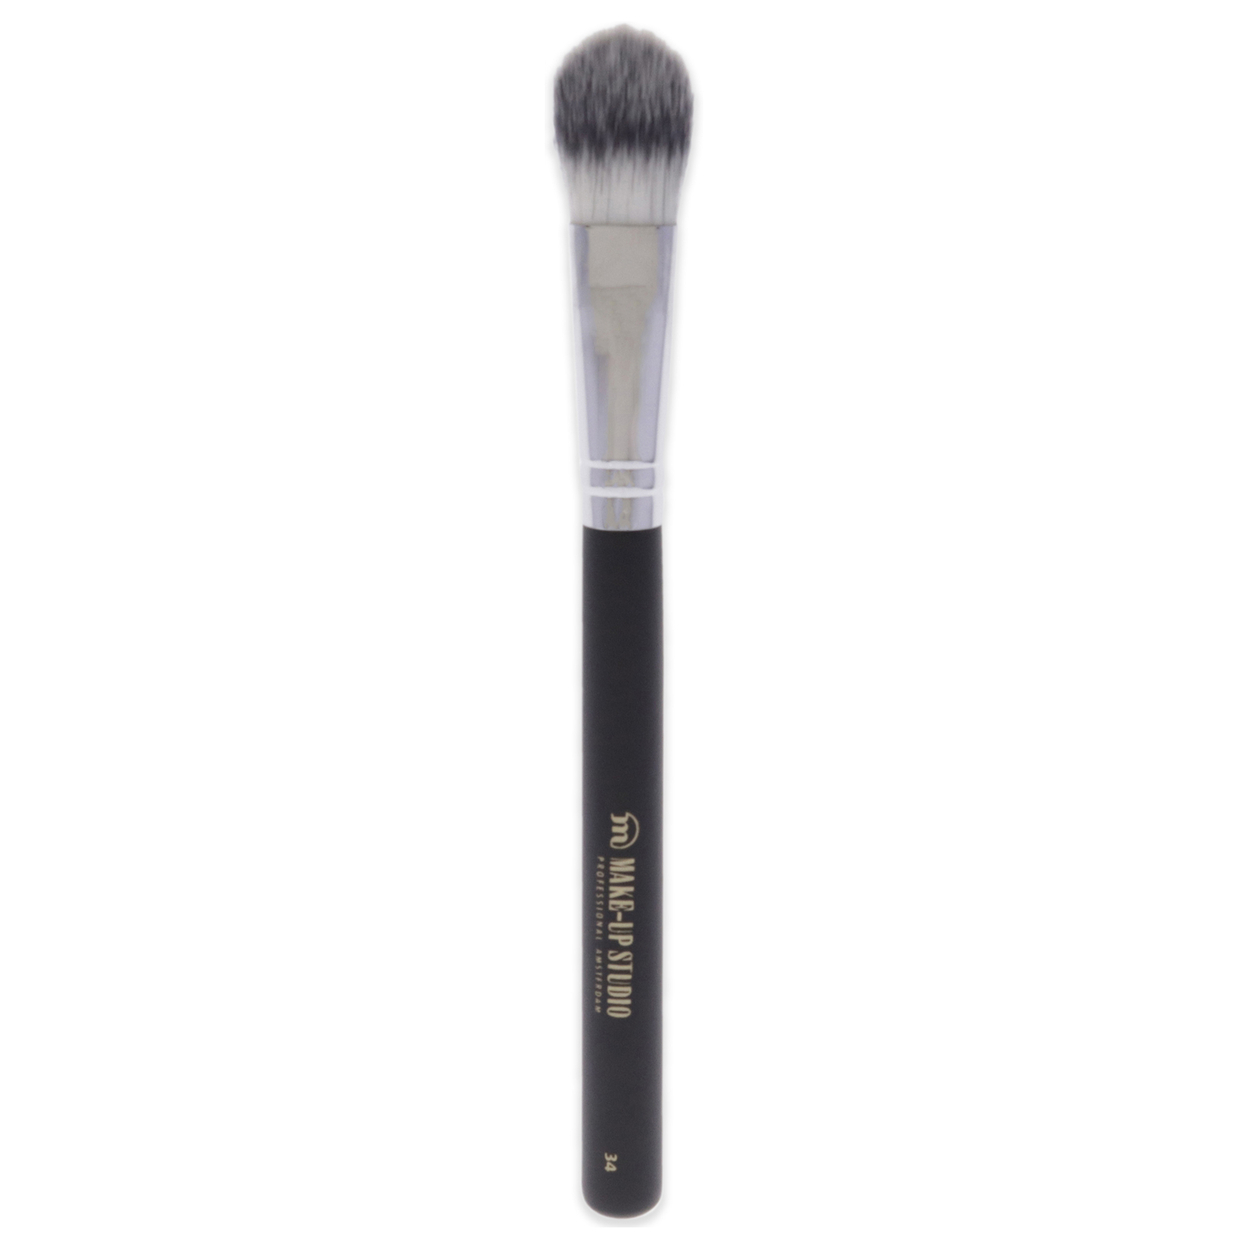 Make-Up Studio Foundation Brush Synthetic Hair - 34 Large 1 Pc